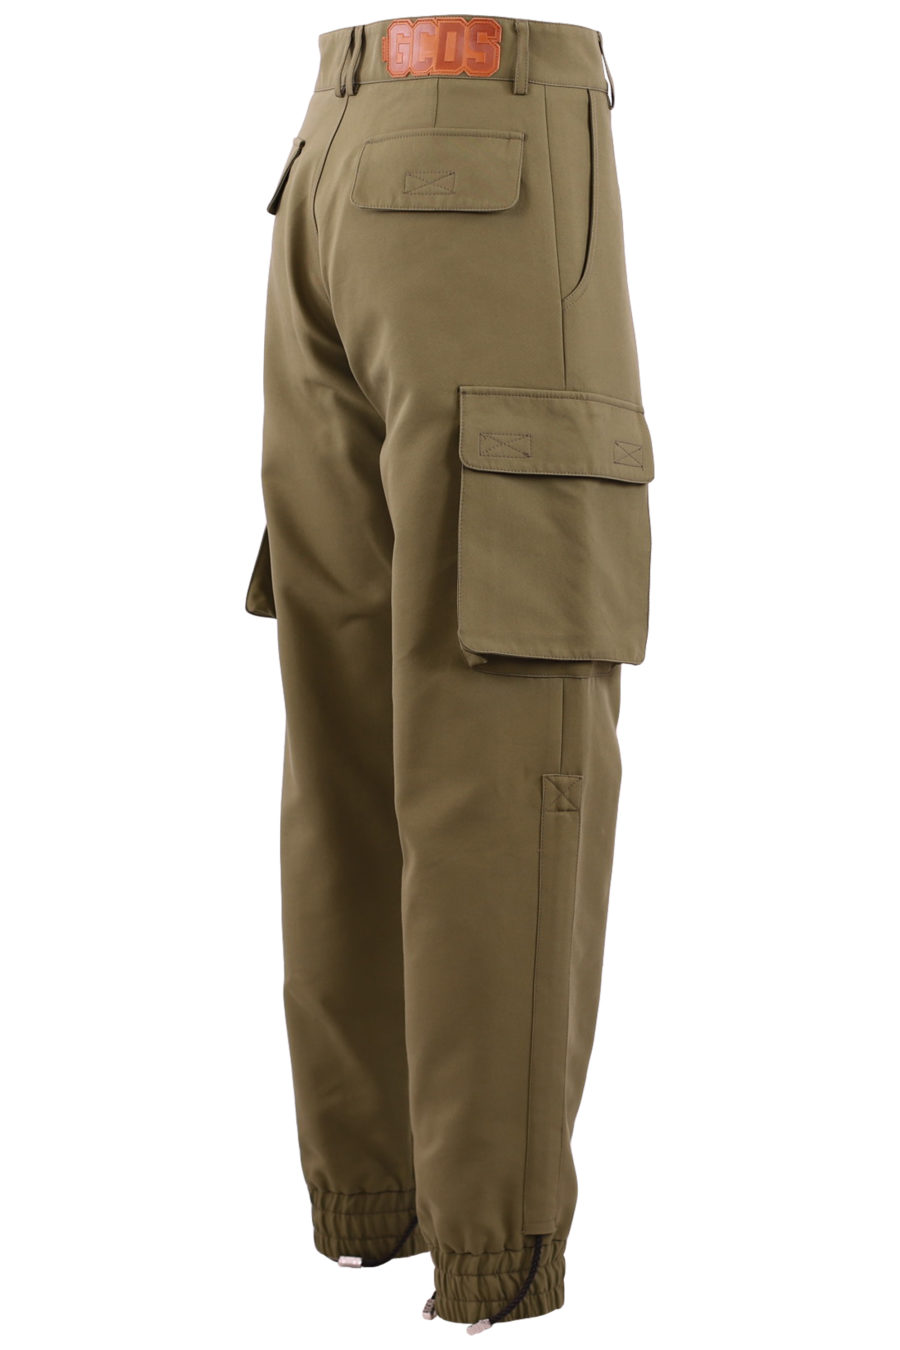 Pantalón tipo cargo de color militar - eaedff421245e8ad3c895a95aca41f143b07a356